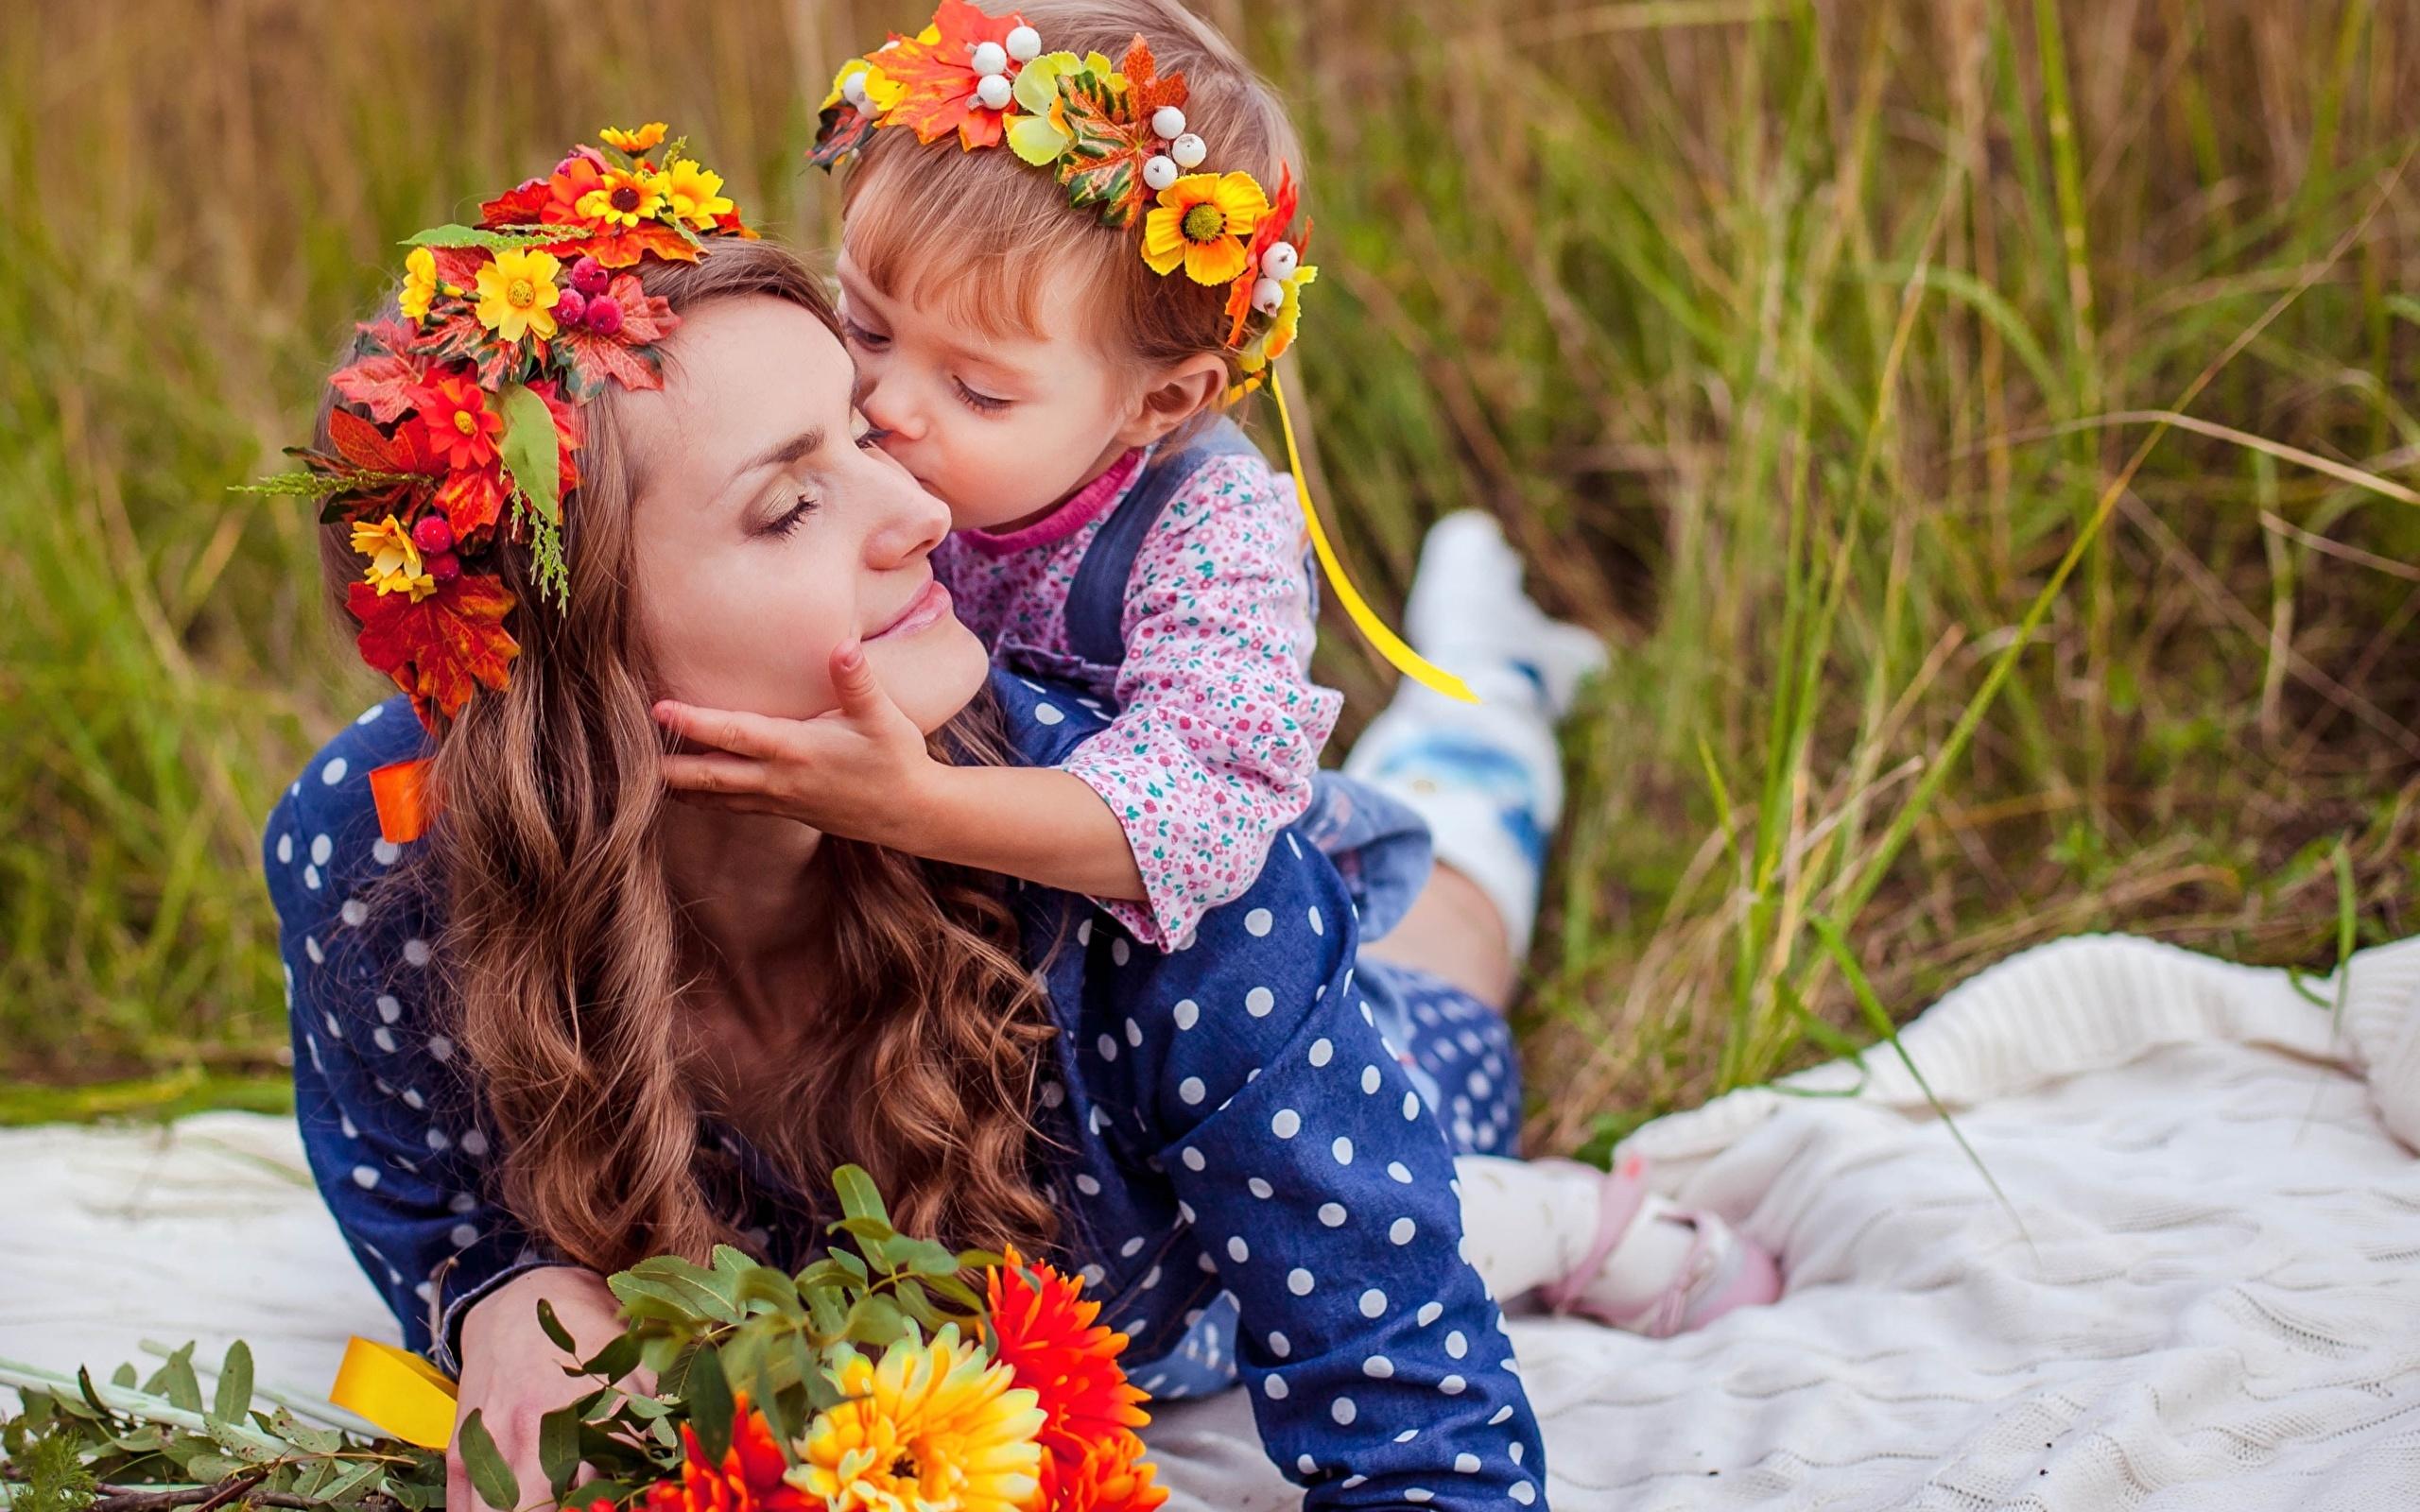 Про маму русское народное. Мать с ребенком. Красивая мама. Дети с цветами. Фотосессия ко Дню матери.